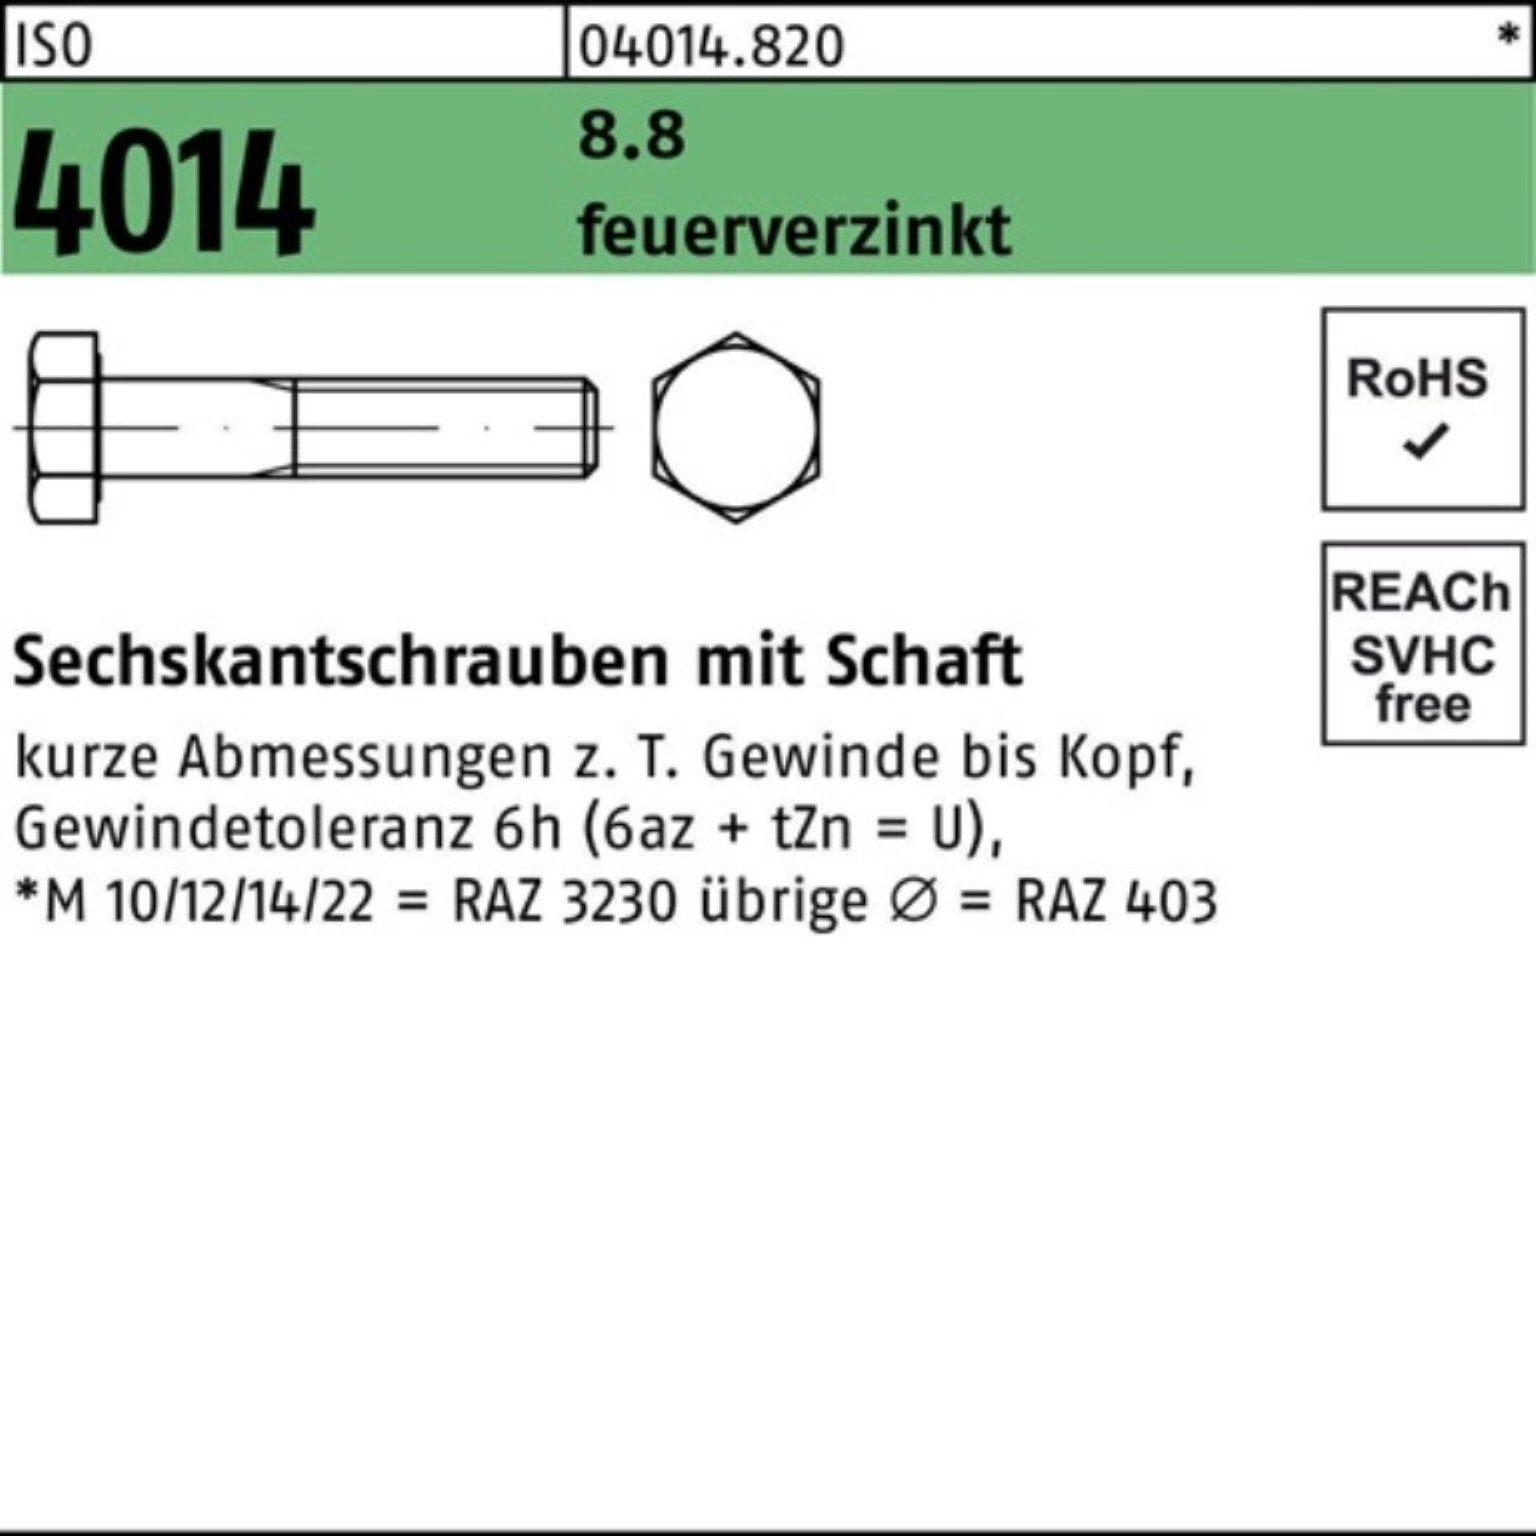 Bufab 1 Sechskantschraube 4014 Sechskantschraube Schaft feuerverz. 100 M24x Pack 100er 8.8 ISO